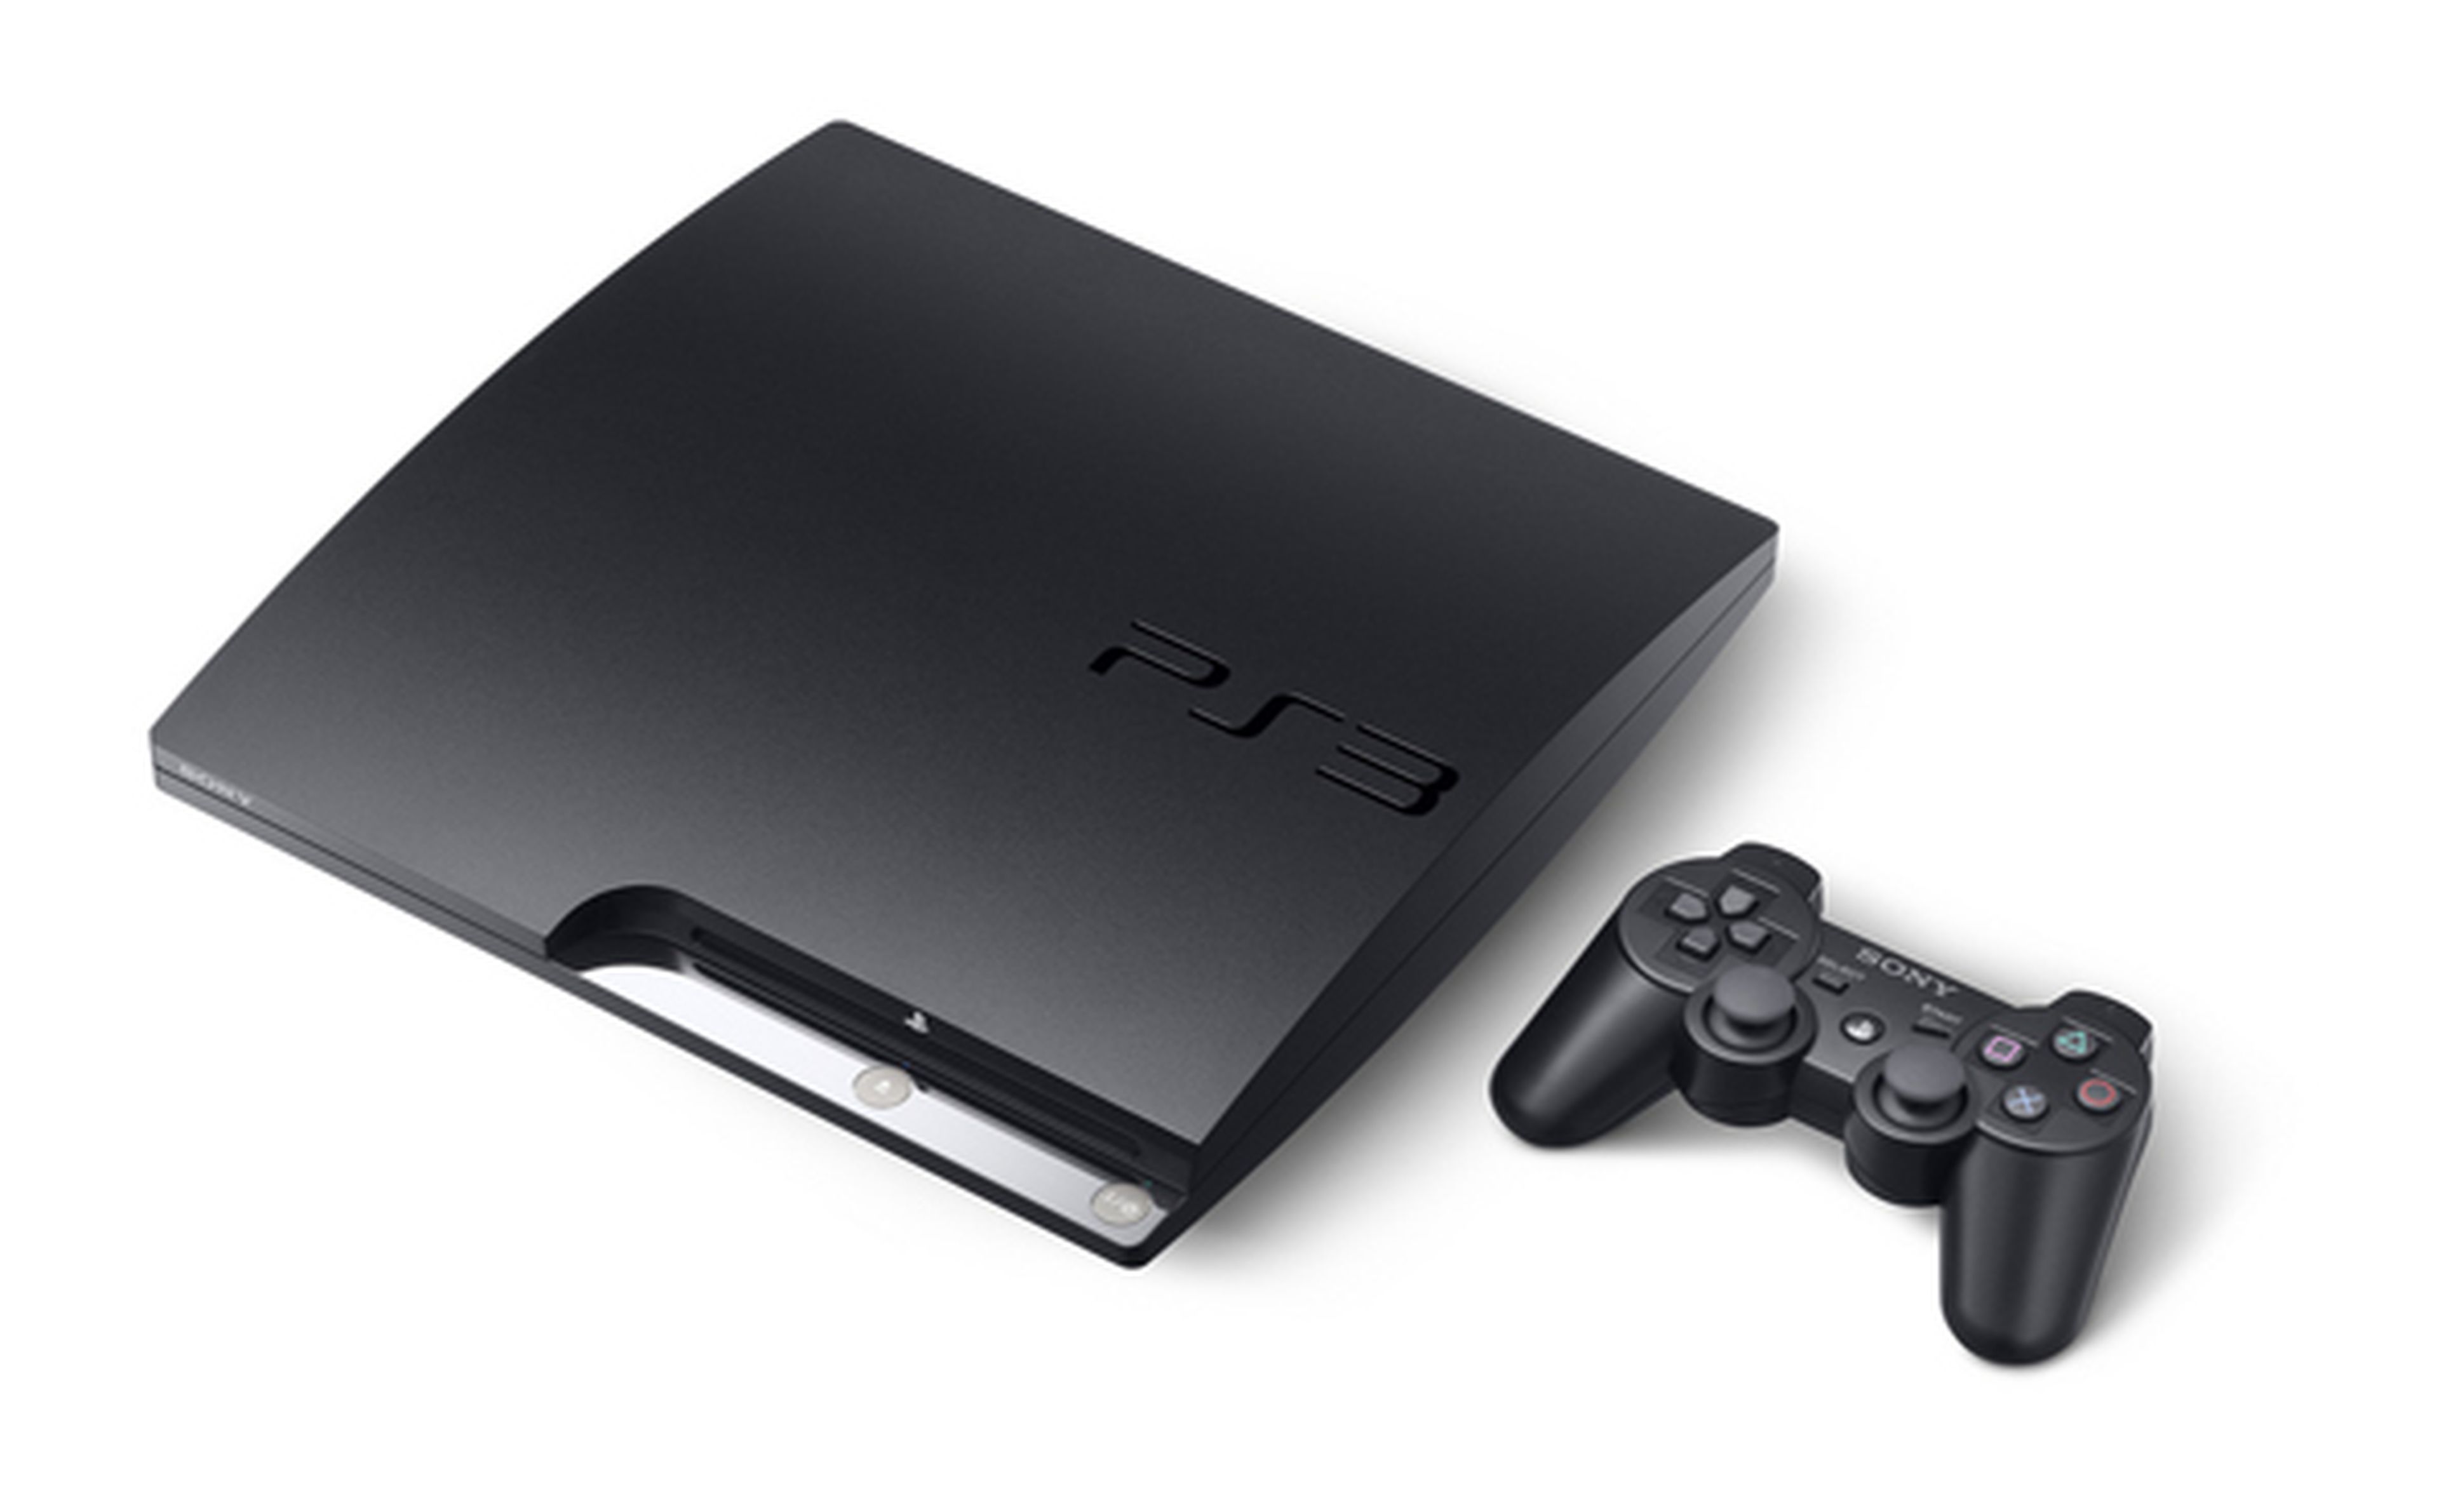 Las ventas de PS3 se disparan tras su rebaja